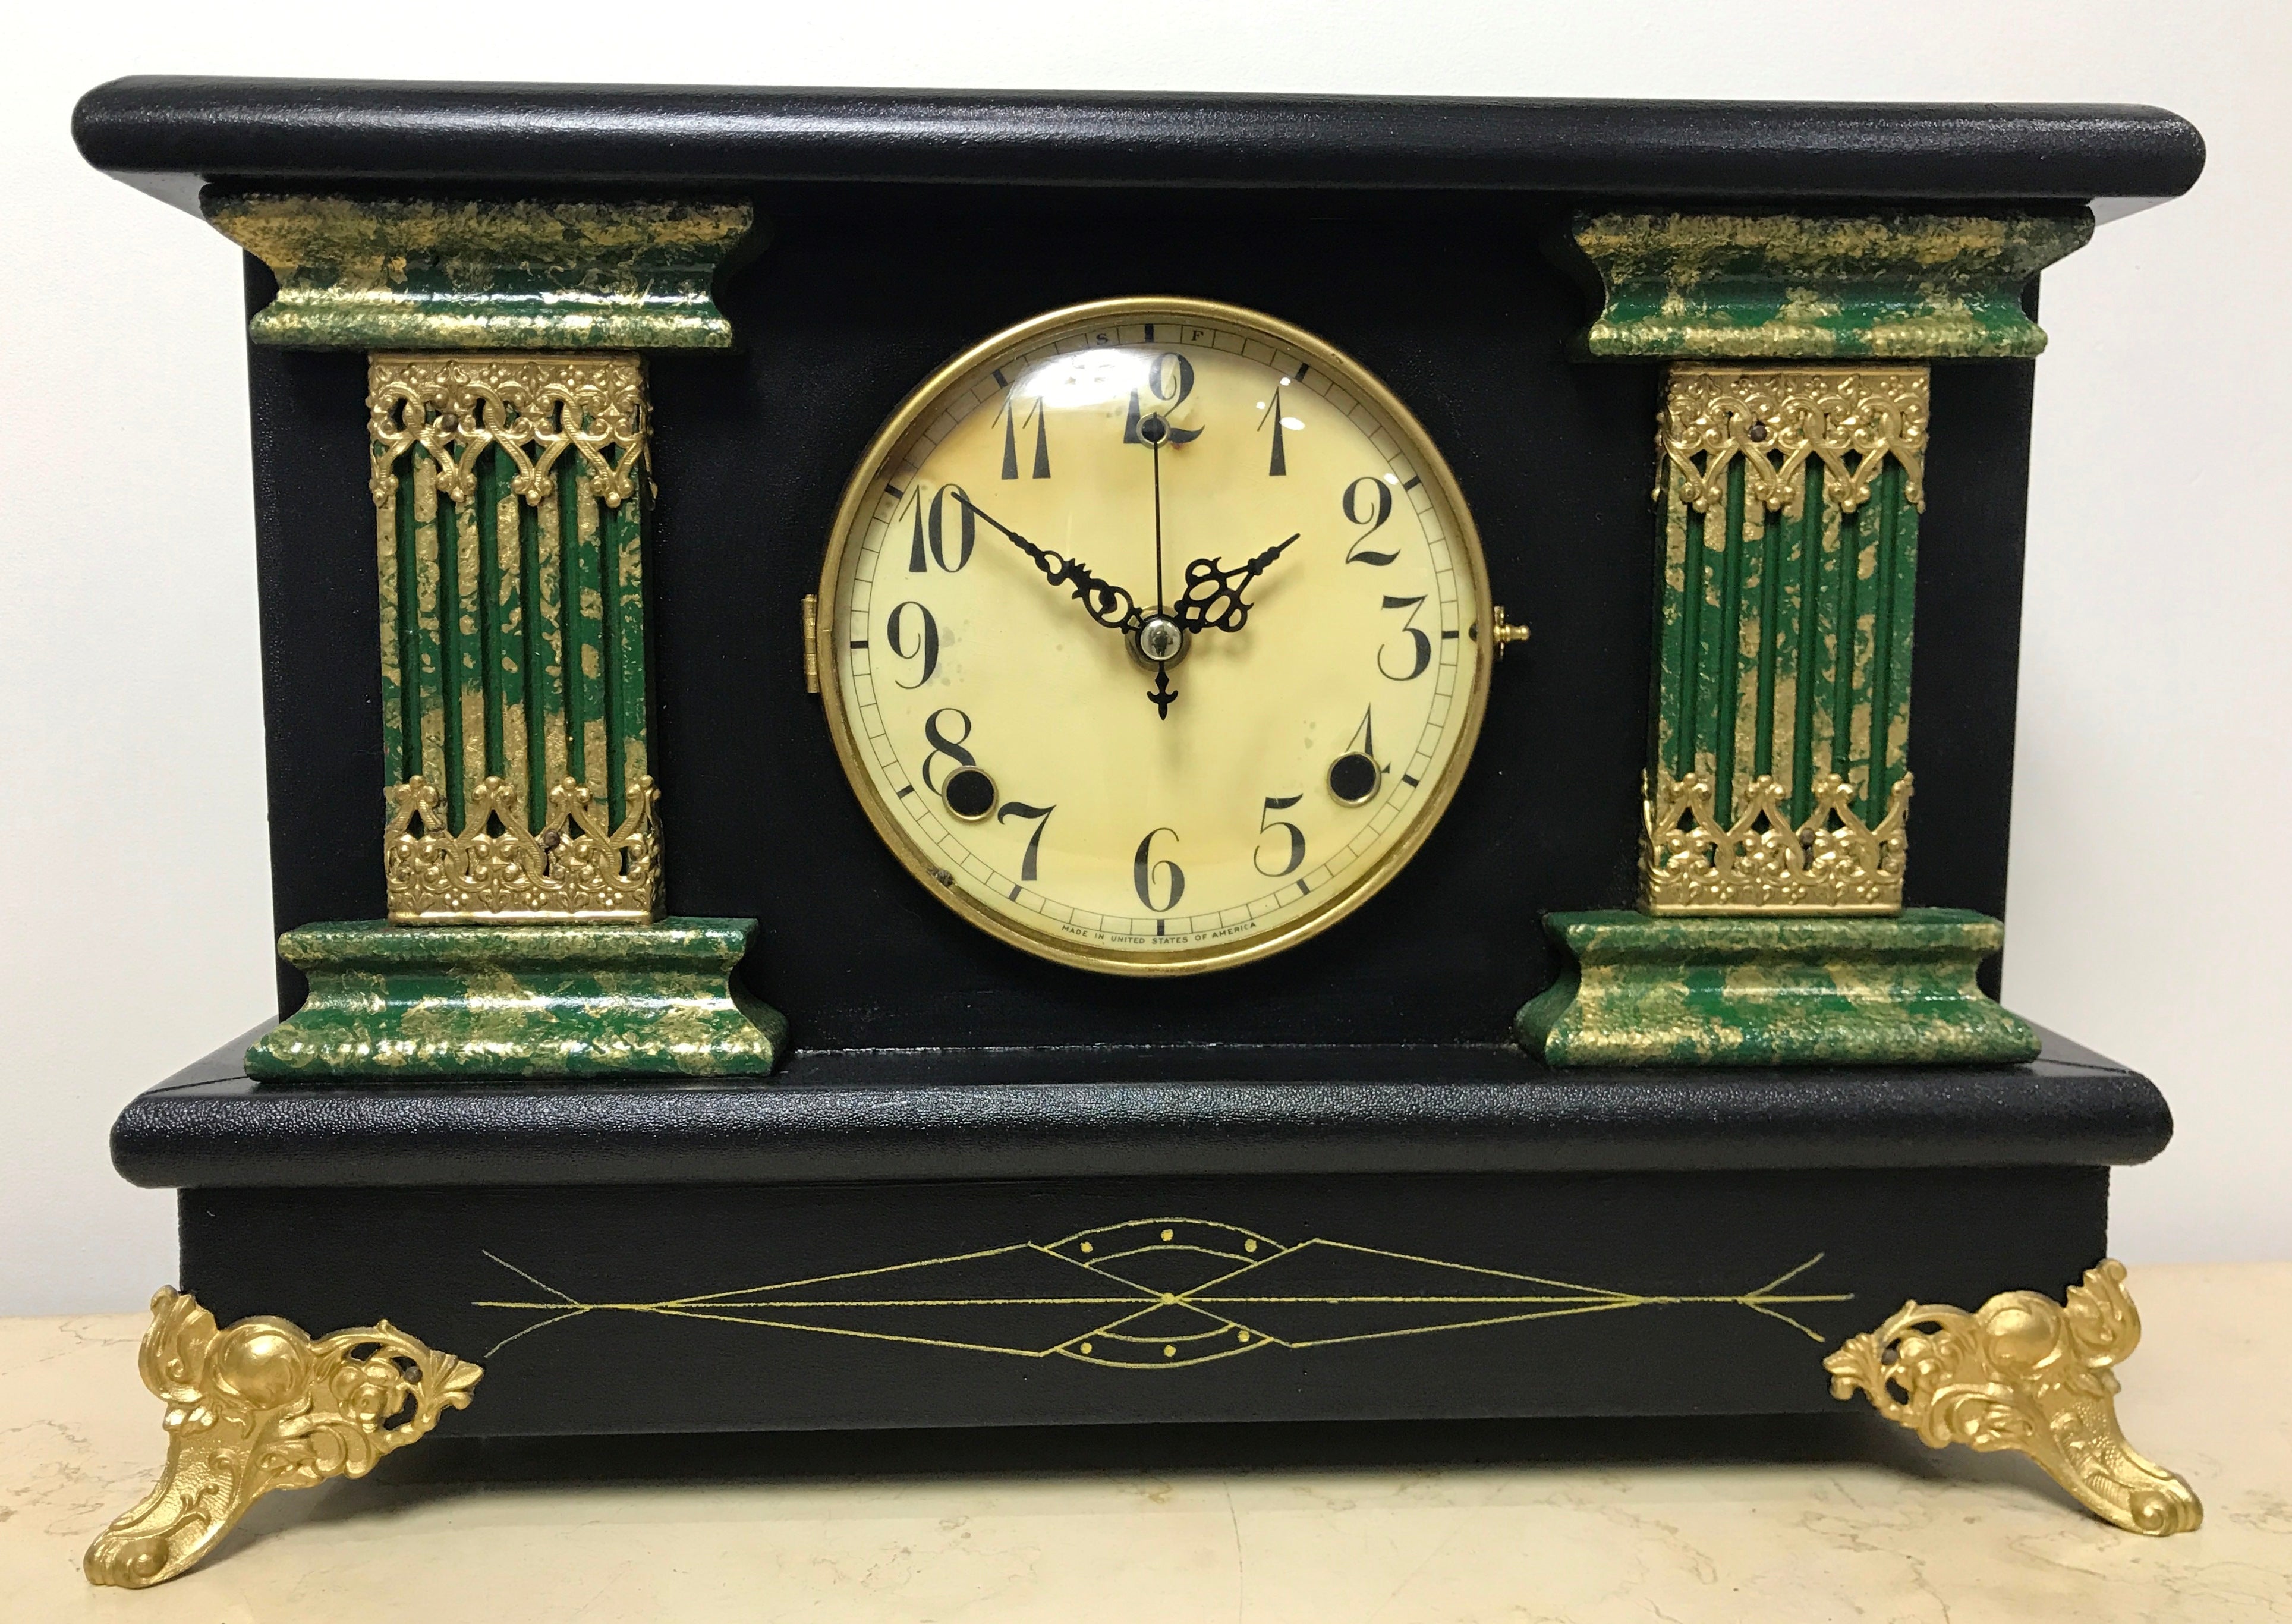 Antique U.S.A. Mantel Clock | eXibit collection